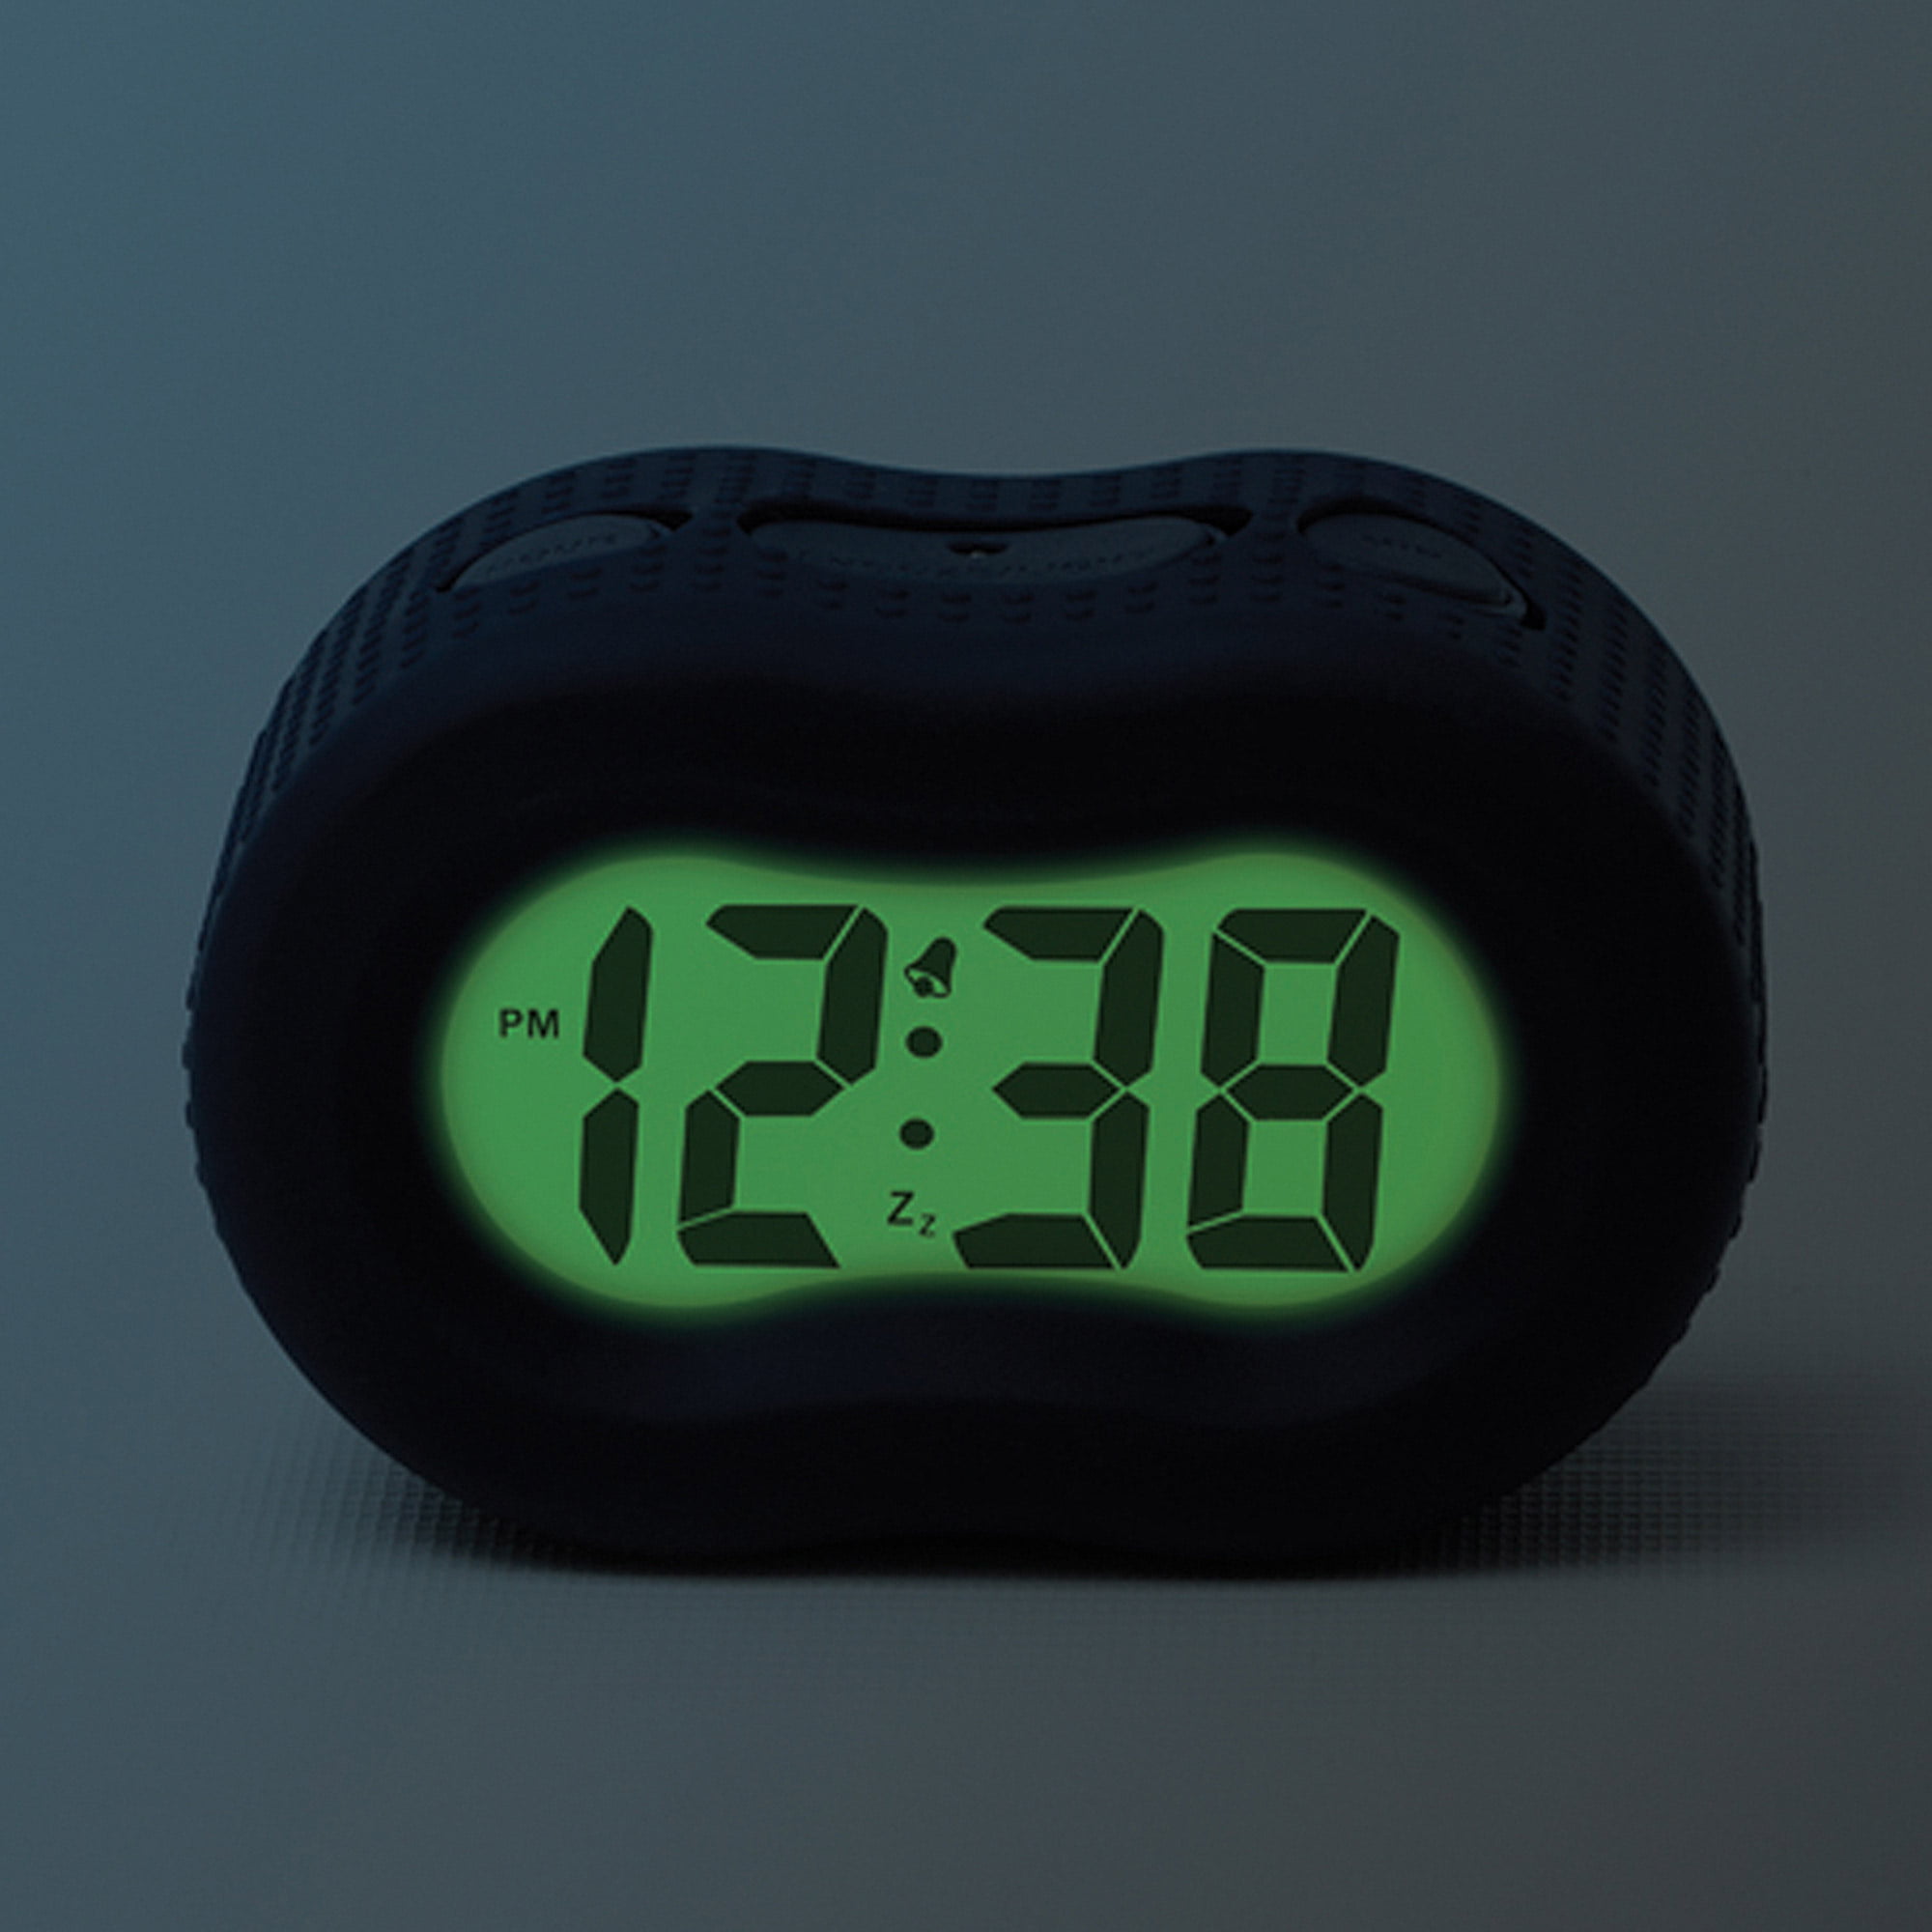 NIB Timelink Silicon Rubber Fashion Digital Alarm Clock 1" LCD Display BLACK 